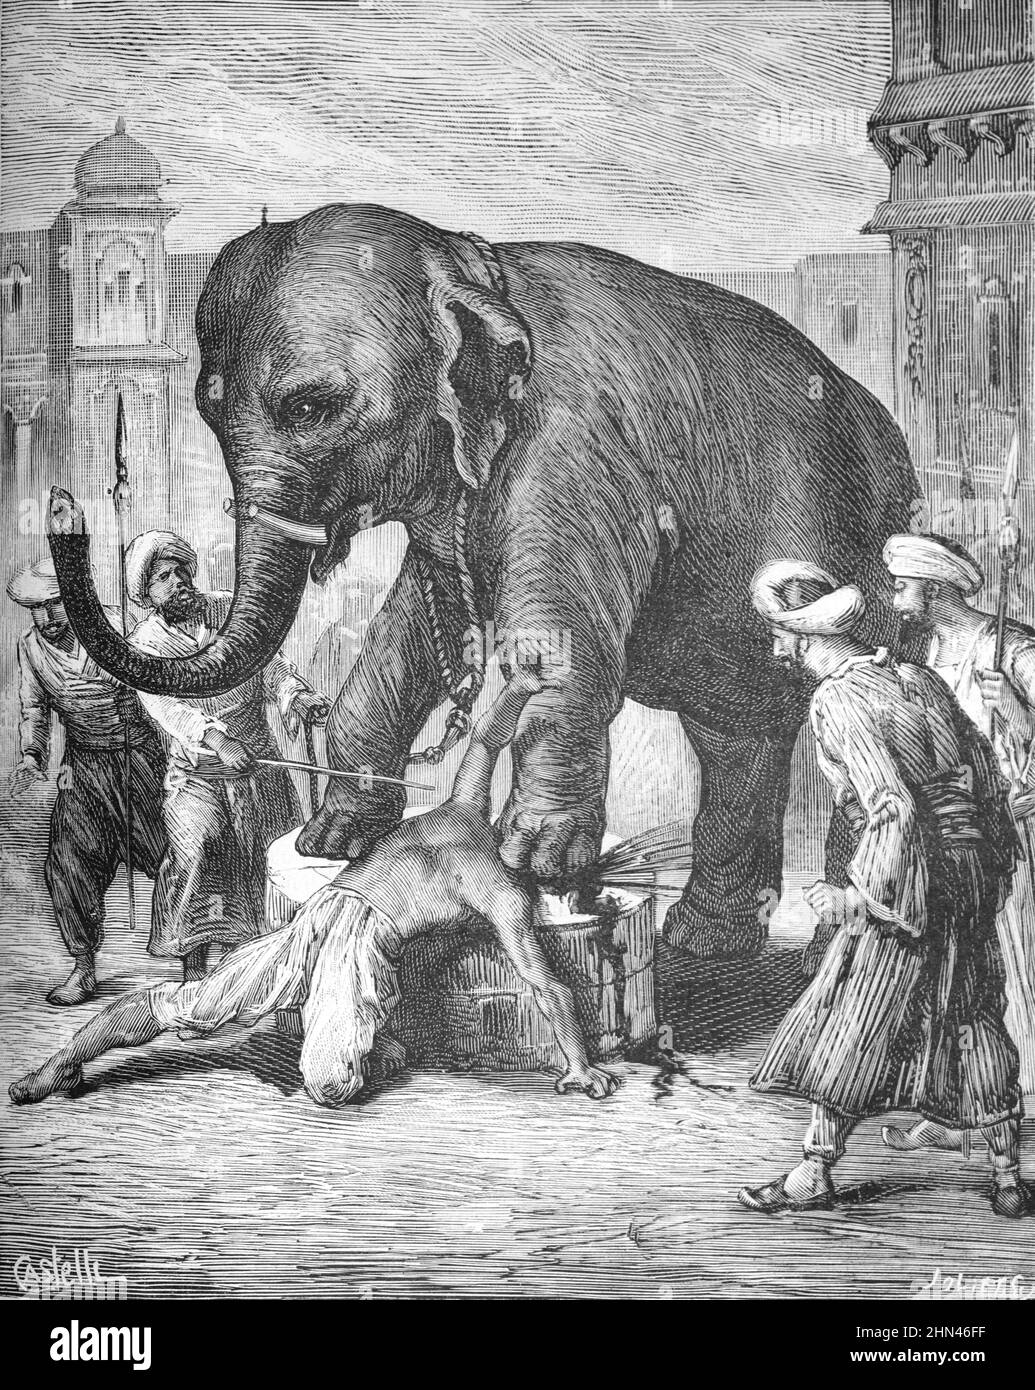 Bestrafung oder Hinrichtung des Verräters, Tod durch Erdrücken oder Erdrücken durch Elefant im Gericht von Nawabs von Awadh Lucknow Indien. Vintage Illustration oder Gravur 1881 (Castelli-Joliet) Stockfoto